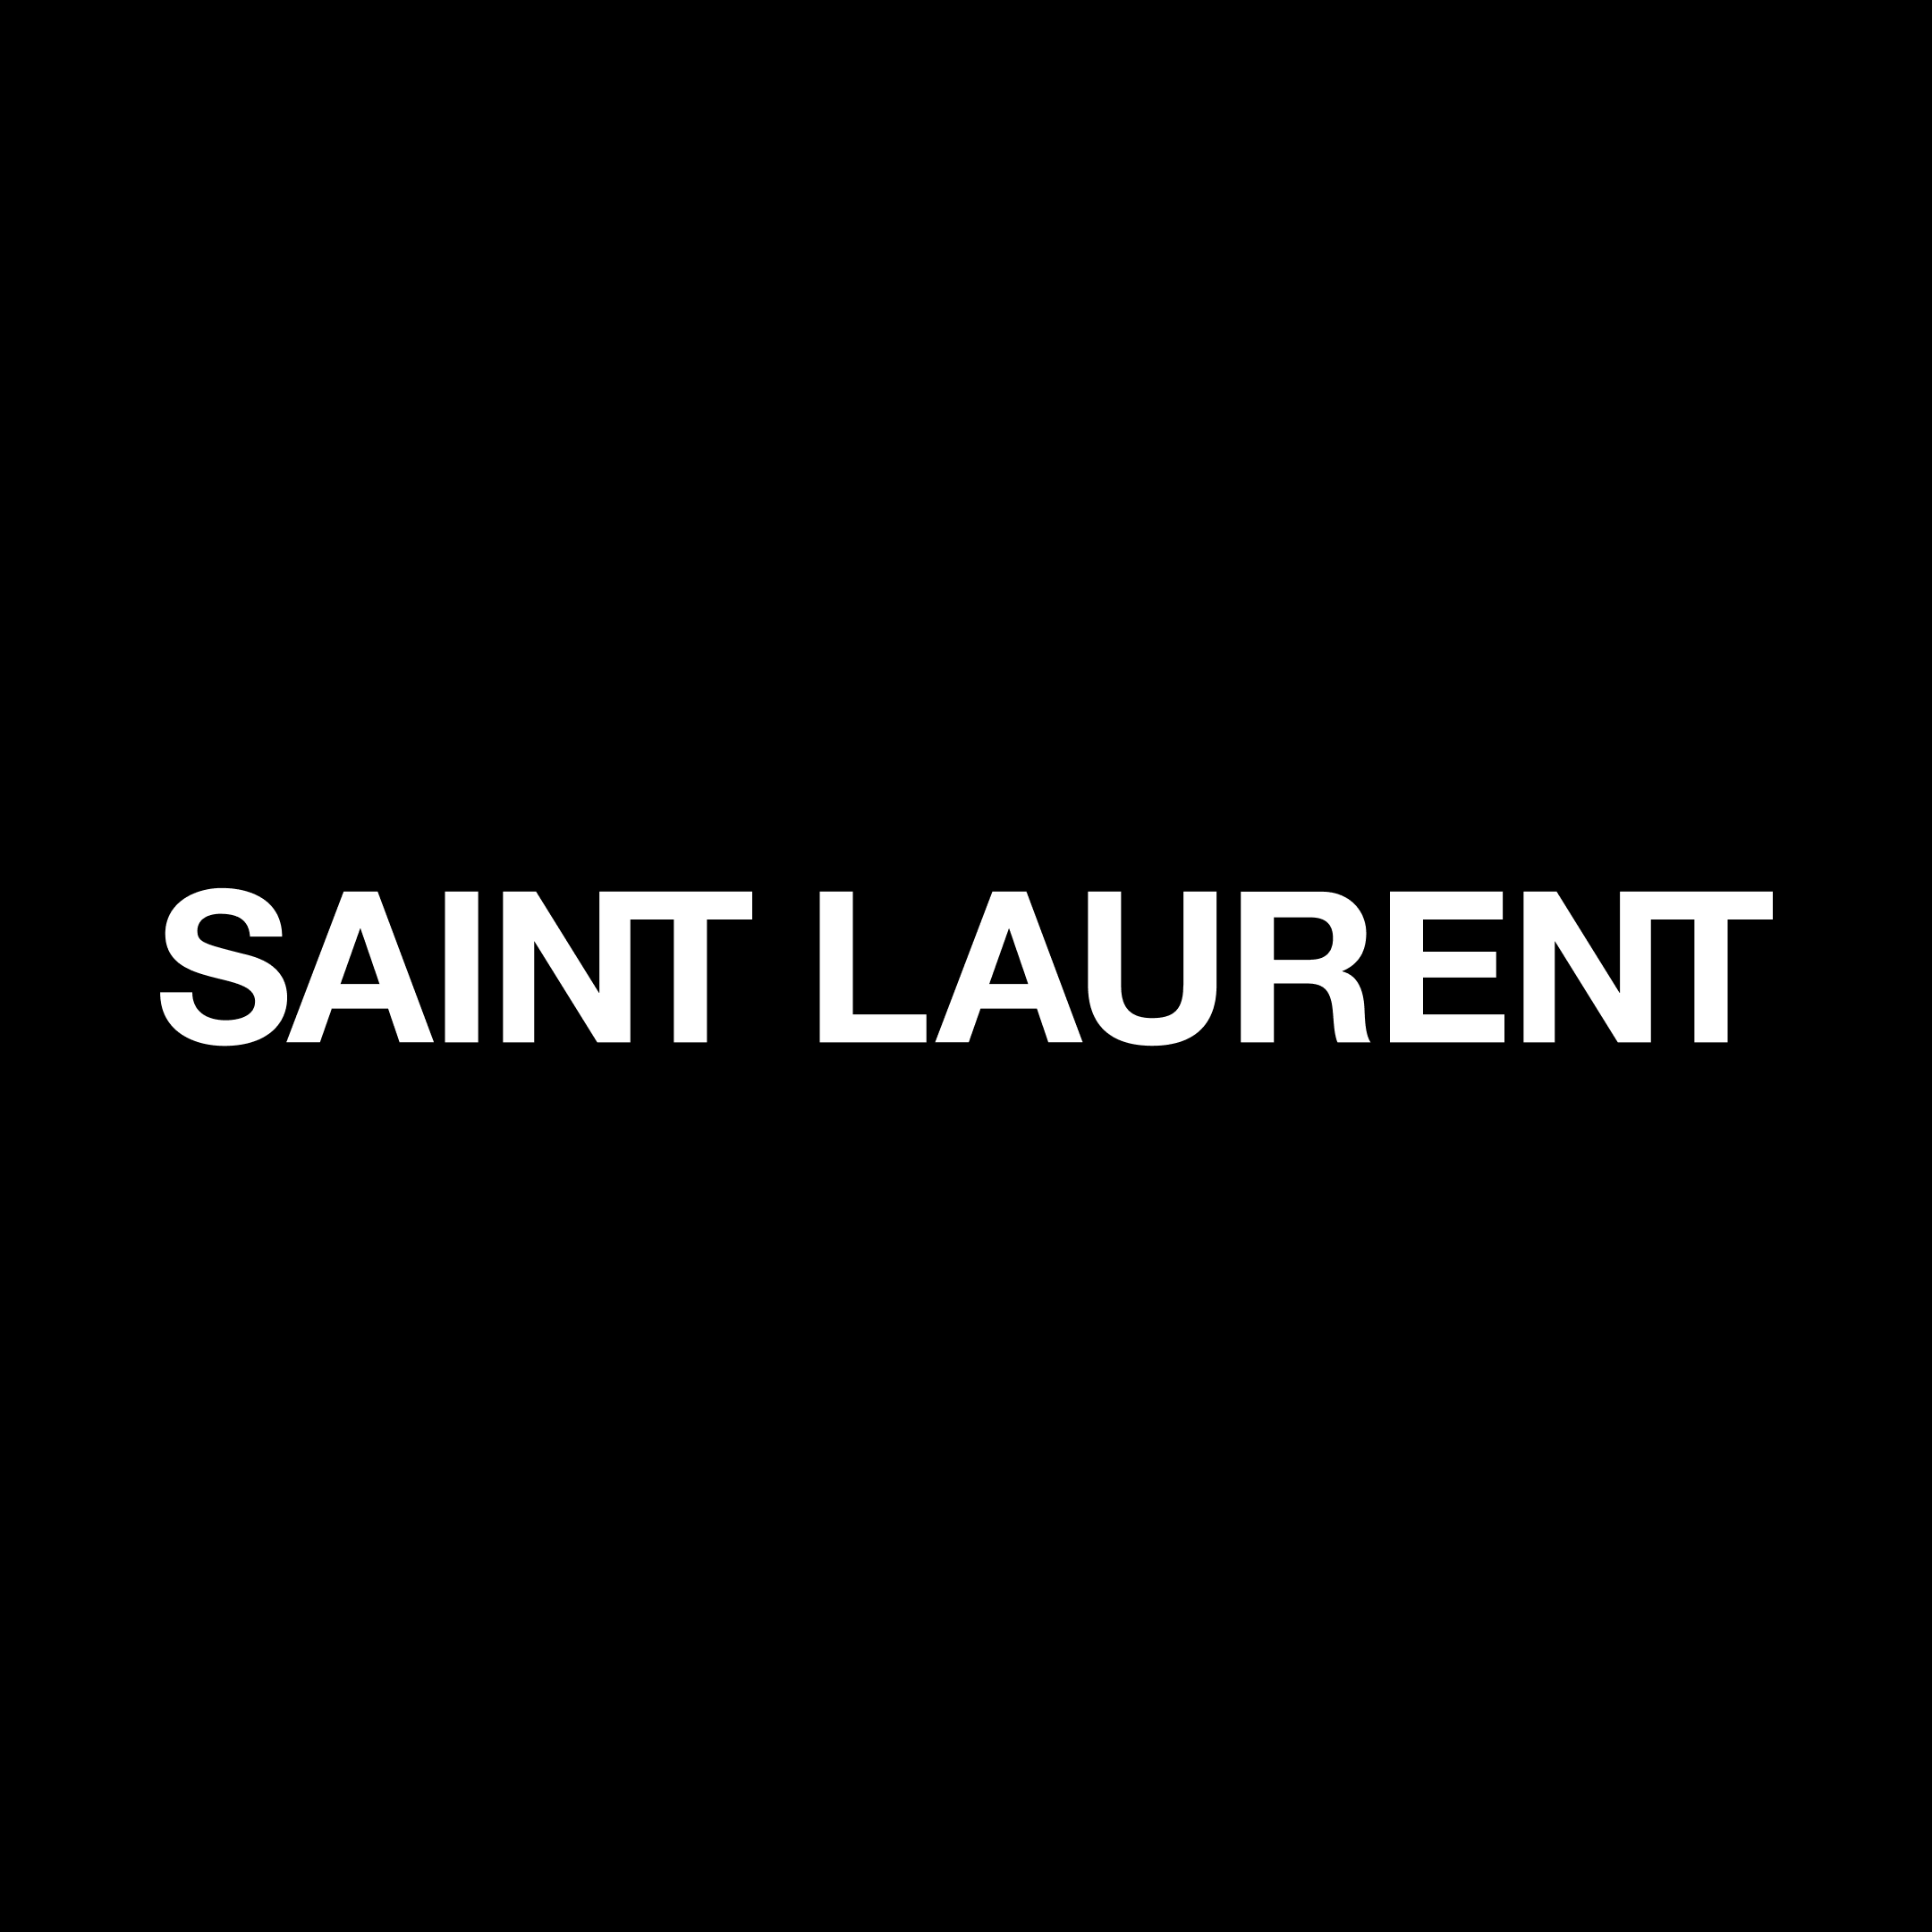 Saint Laurent in Stuttgart - Logo